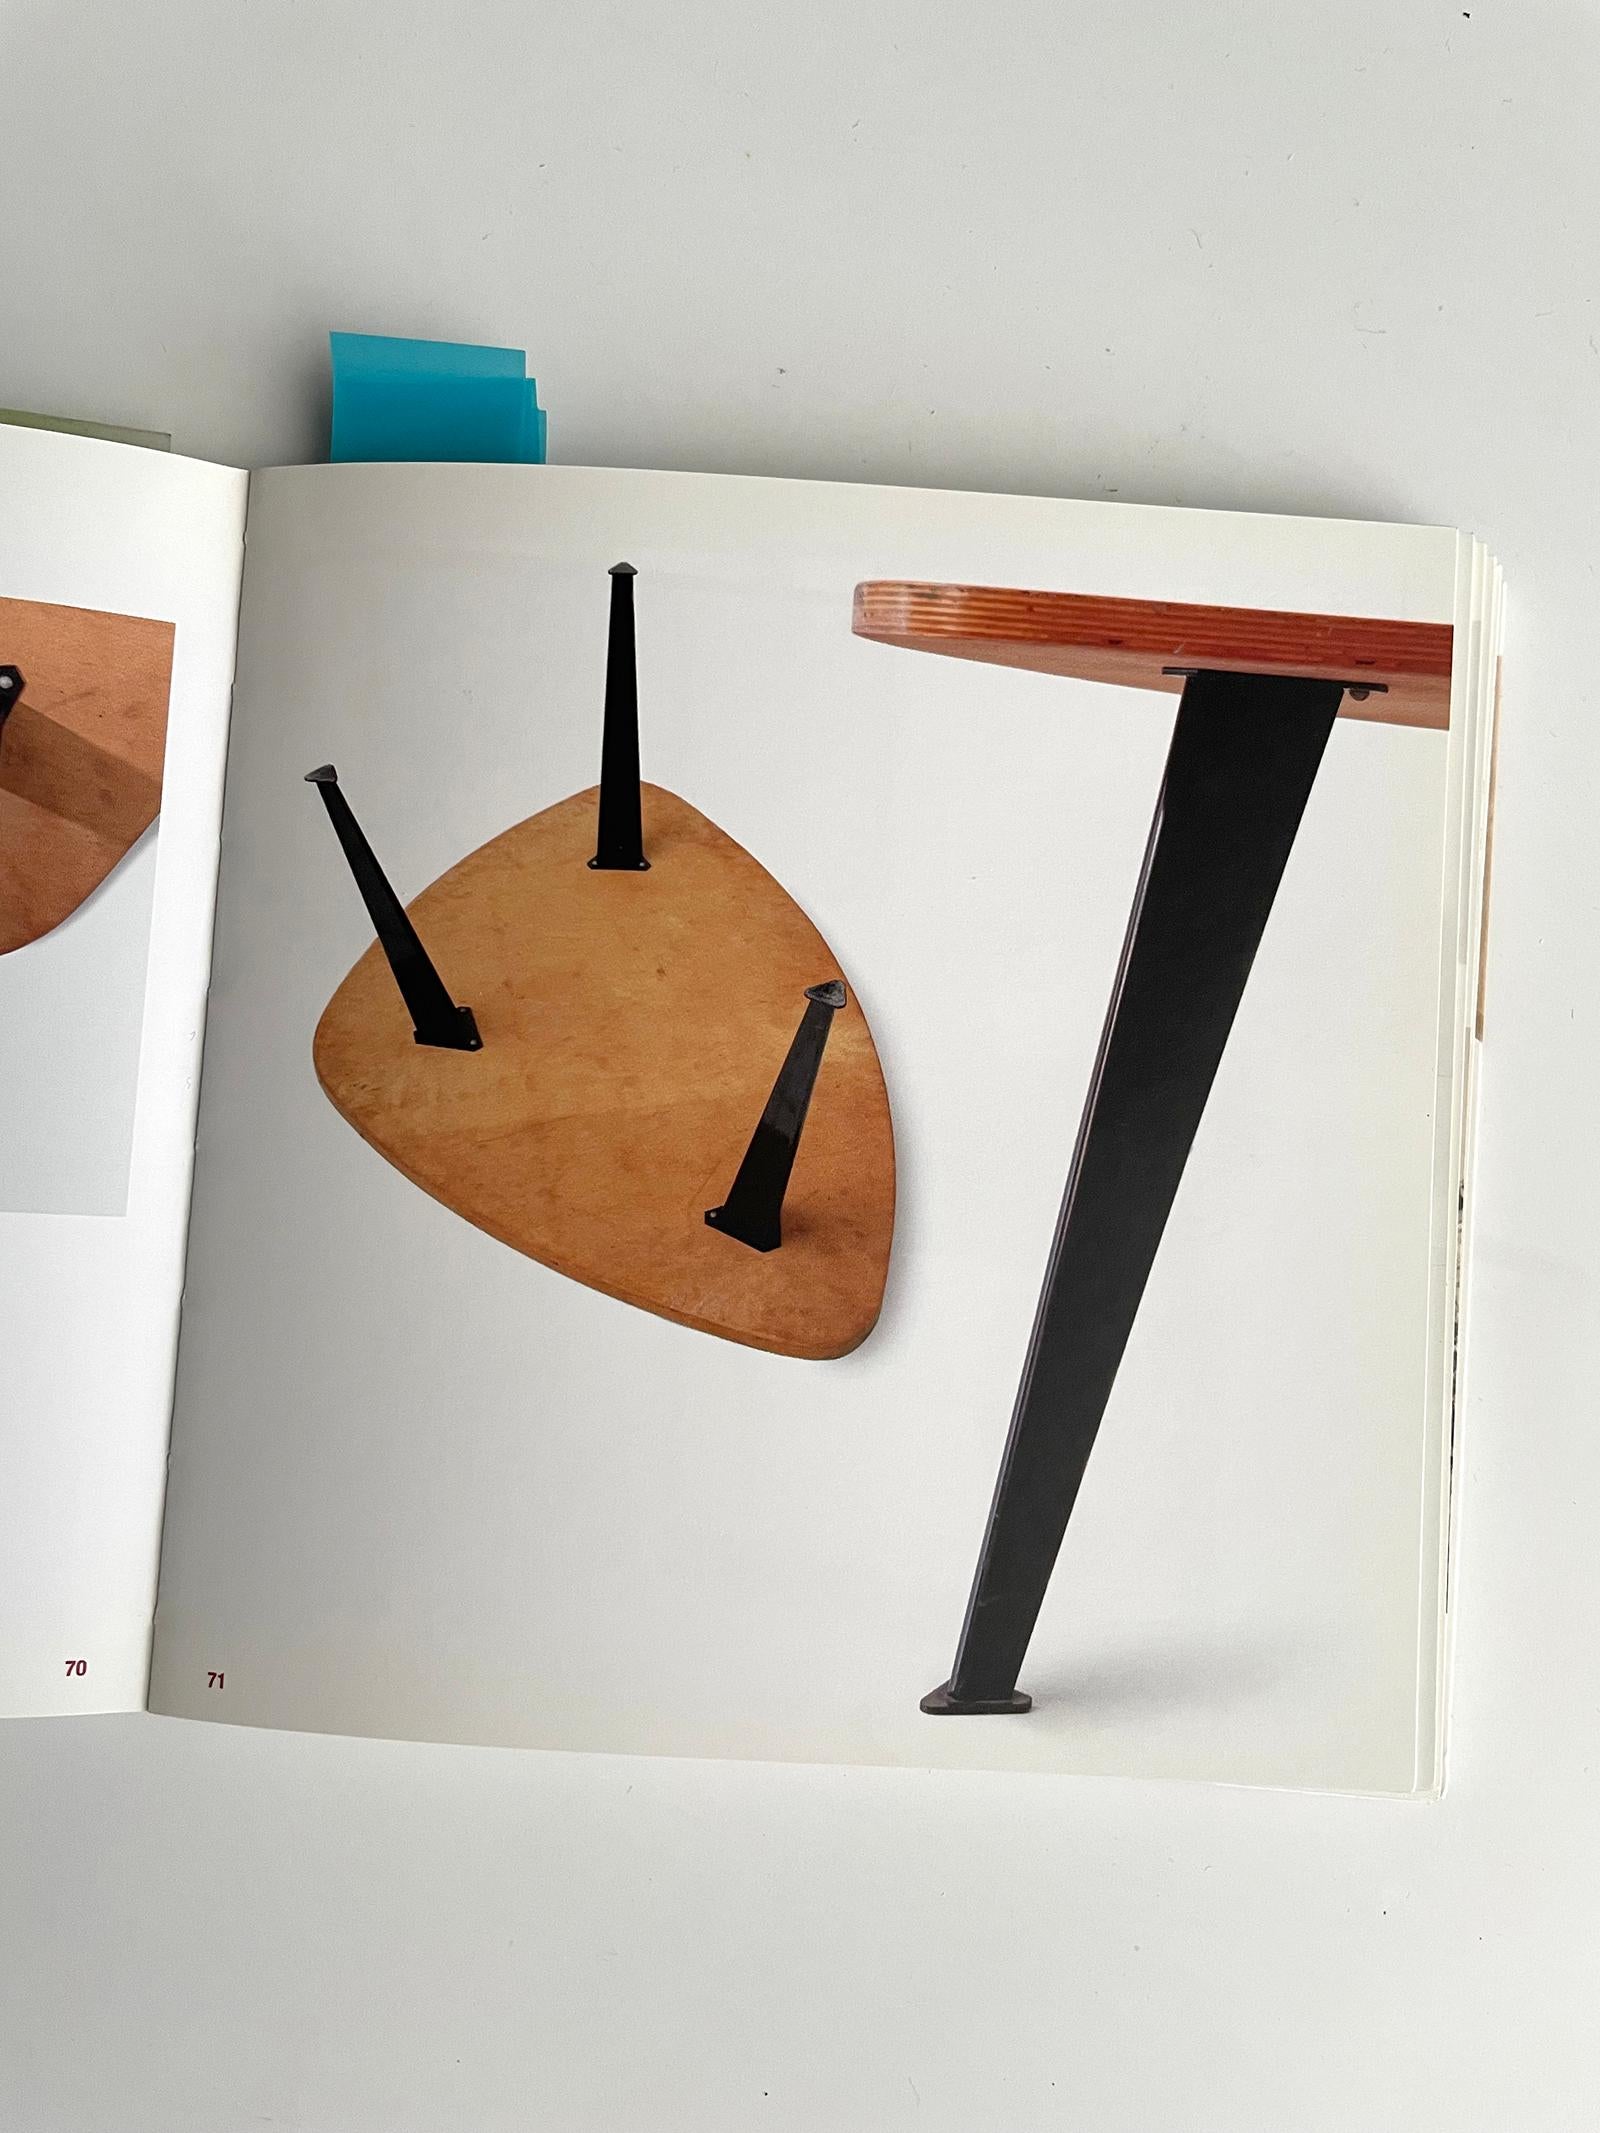 Metal Mid-century modern wooden Coffee Table by Willy Van Der Meeren 1950s